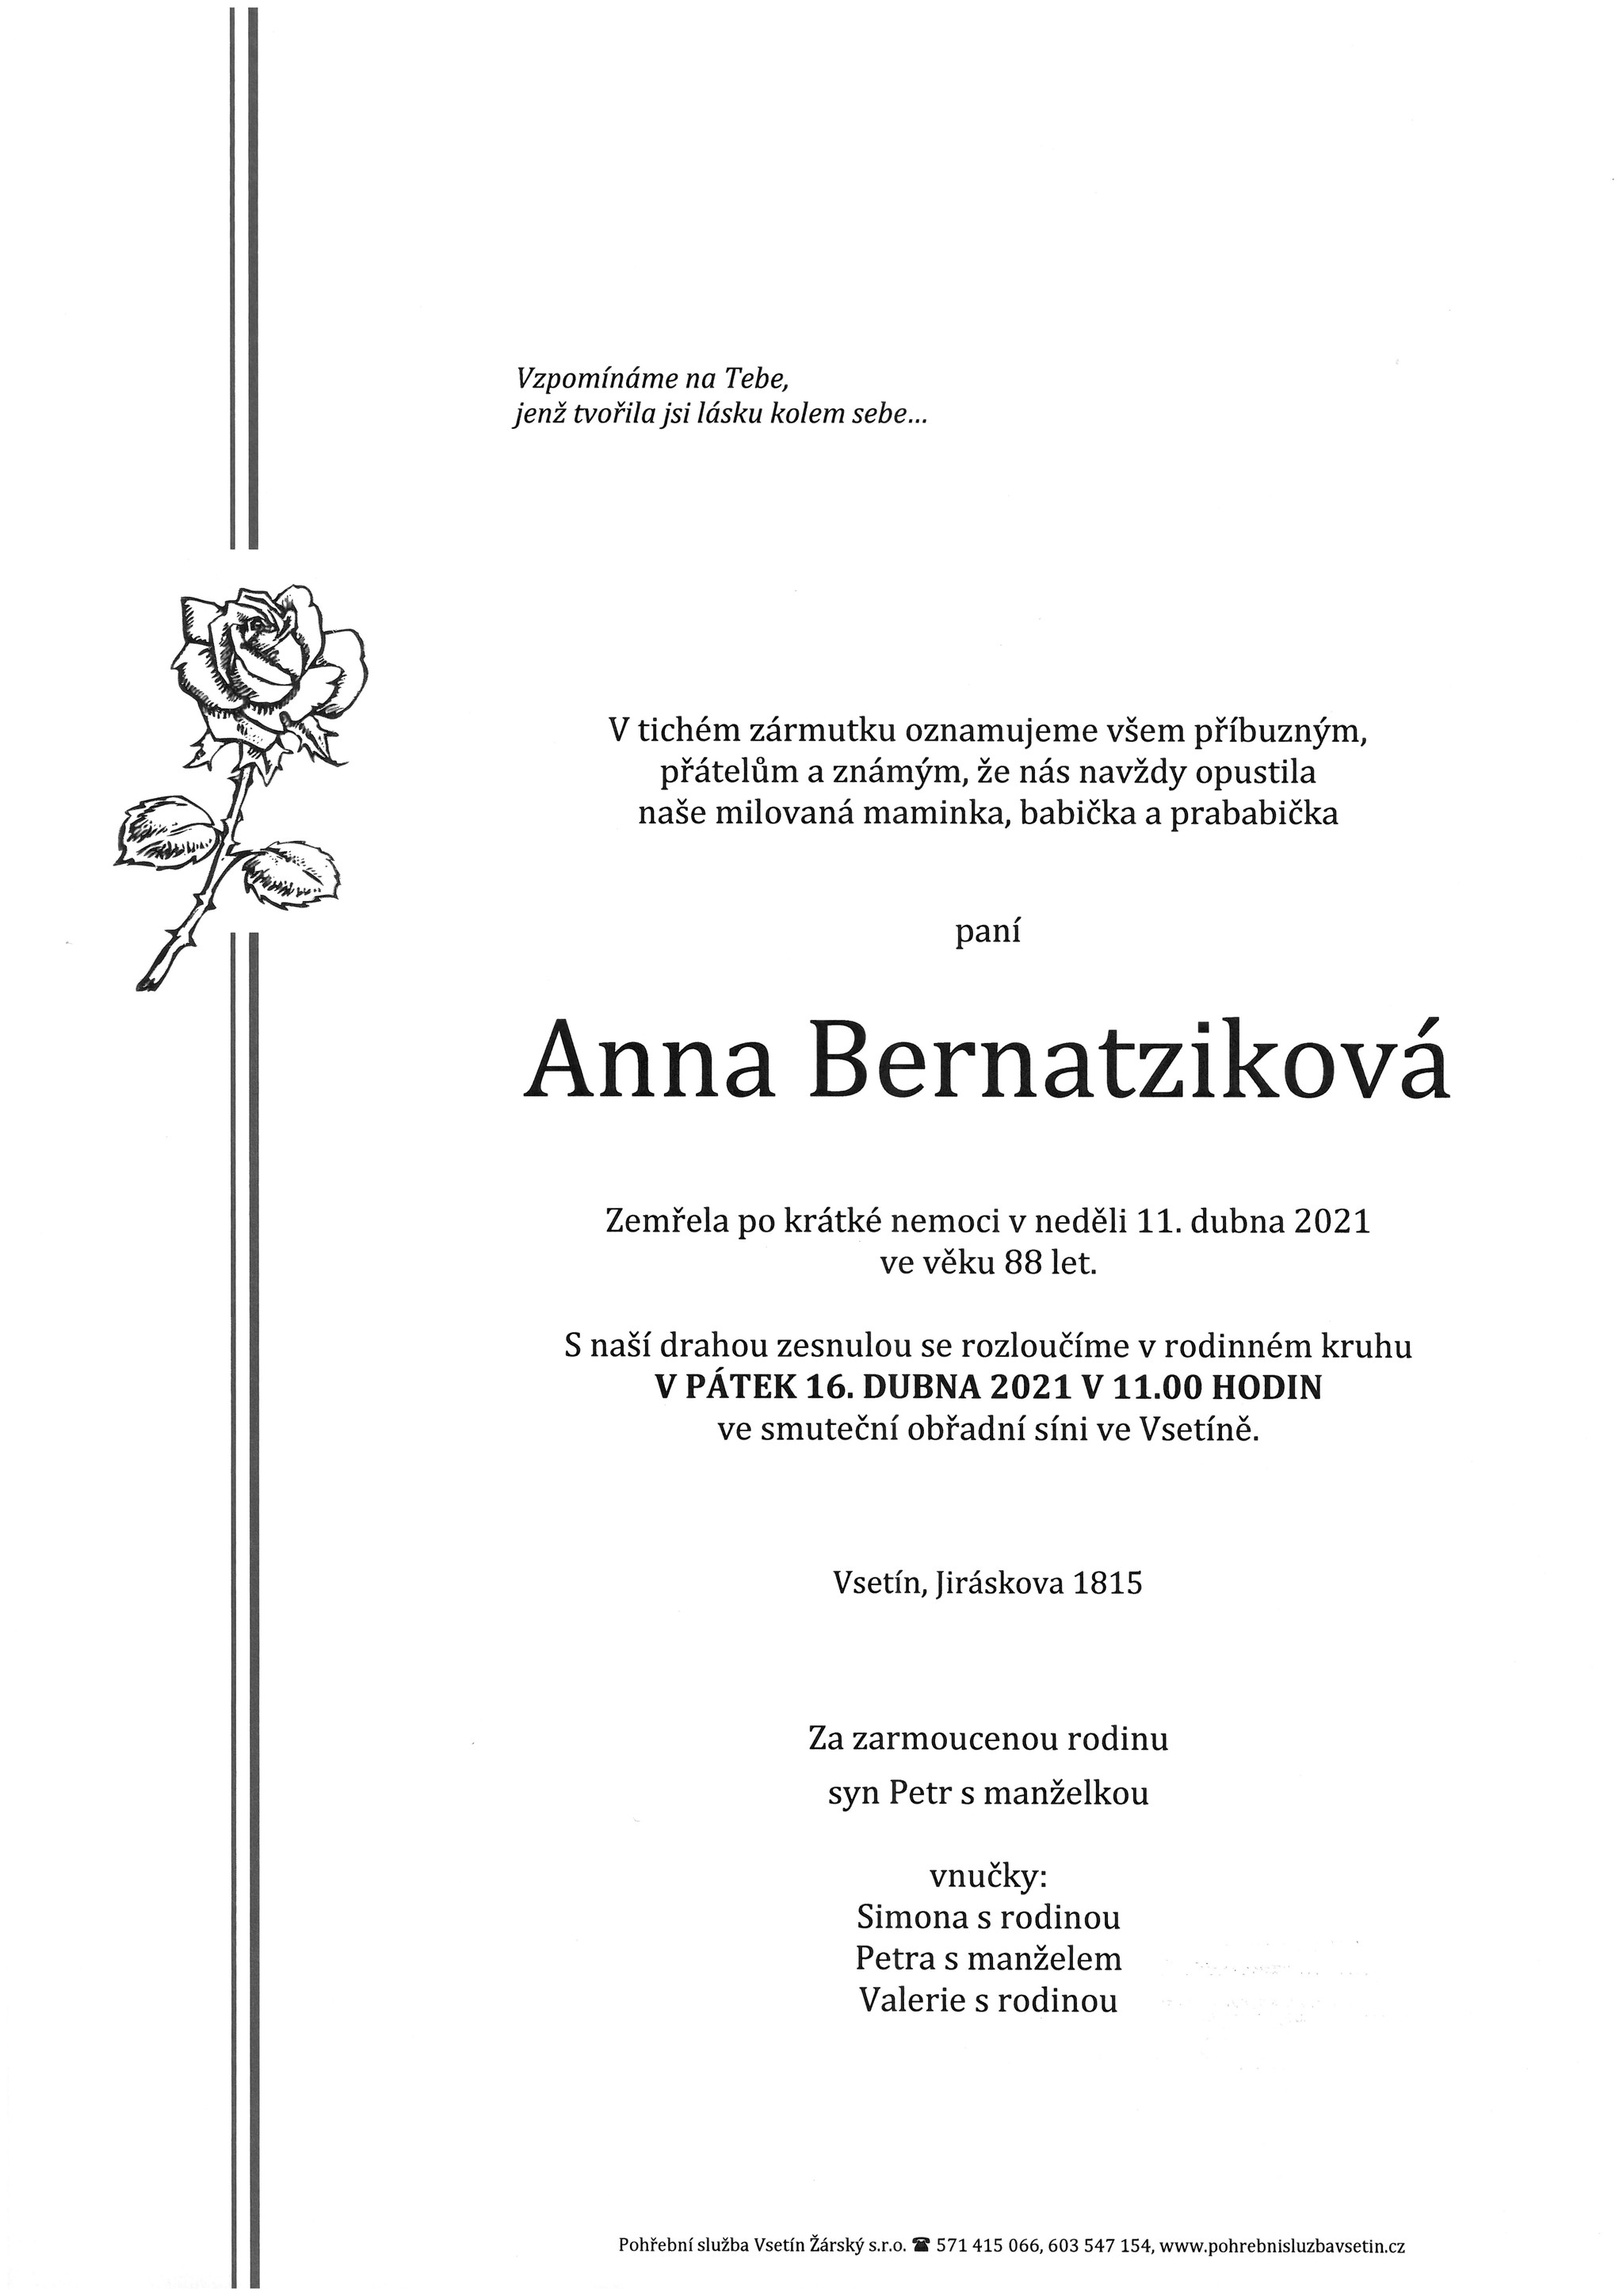 Anna Bernatziková